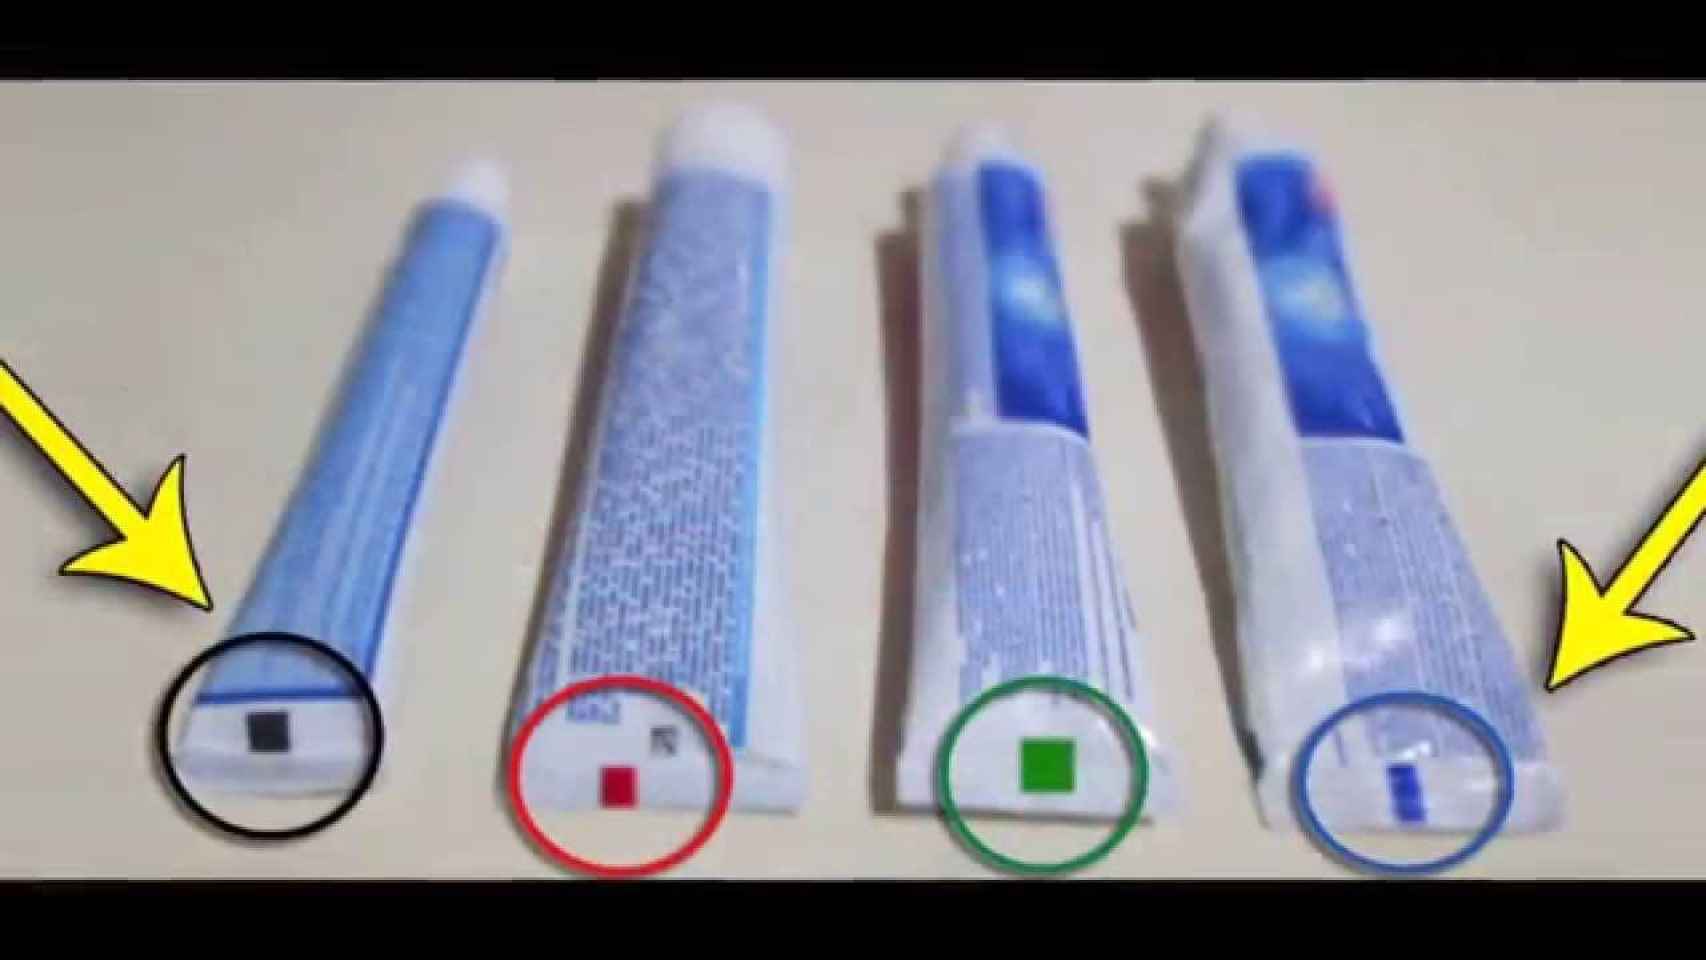 Los diferentes colores de los tubos de pasta dental